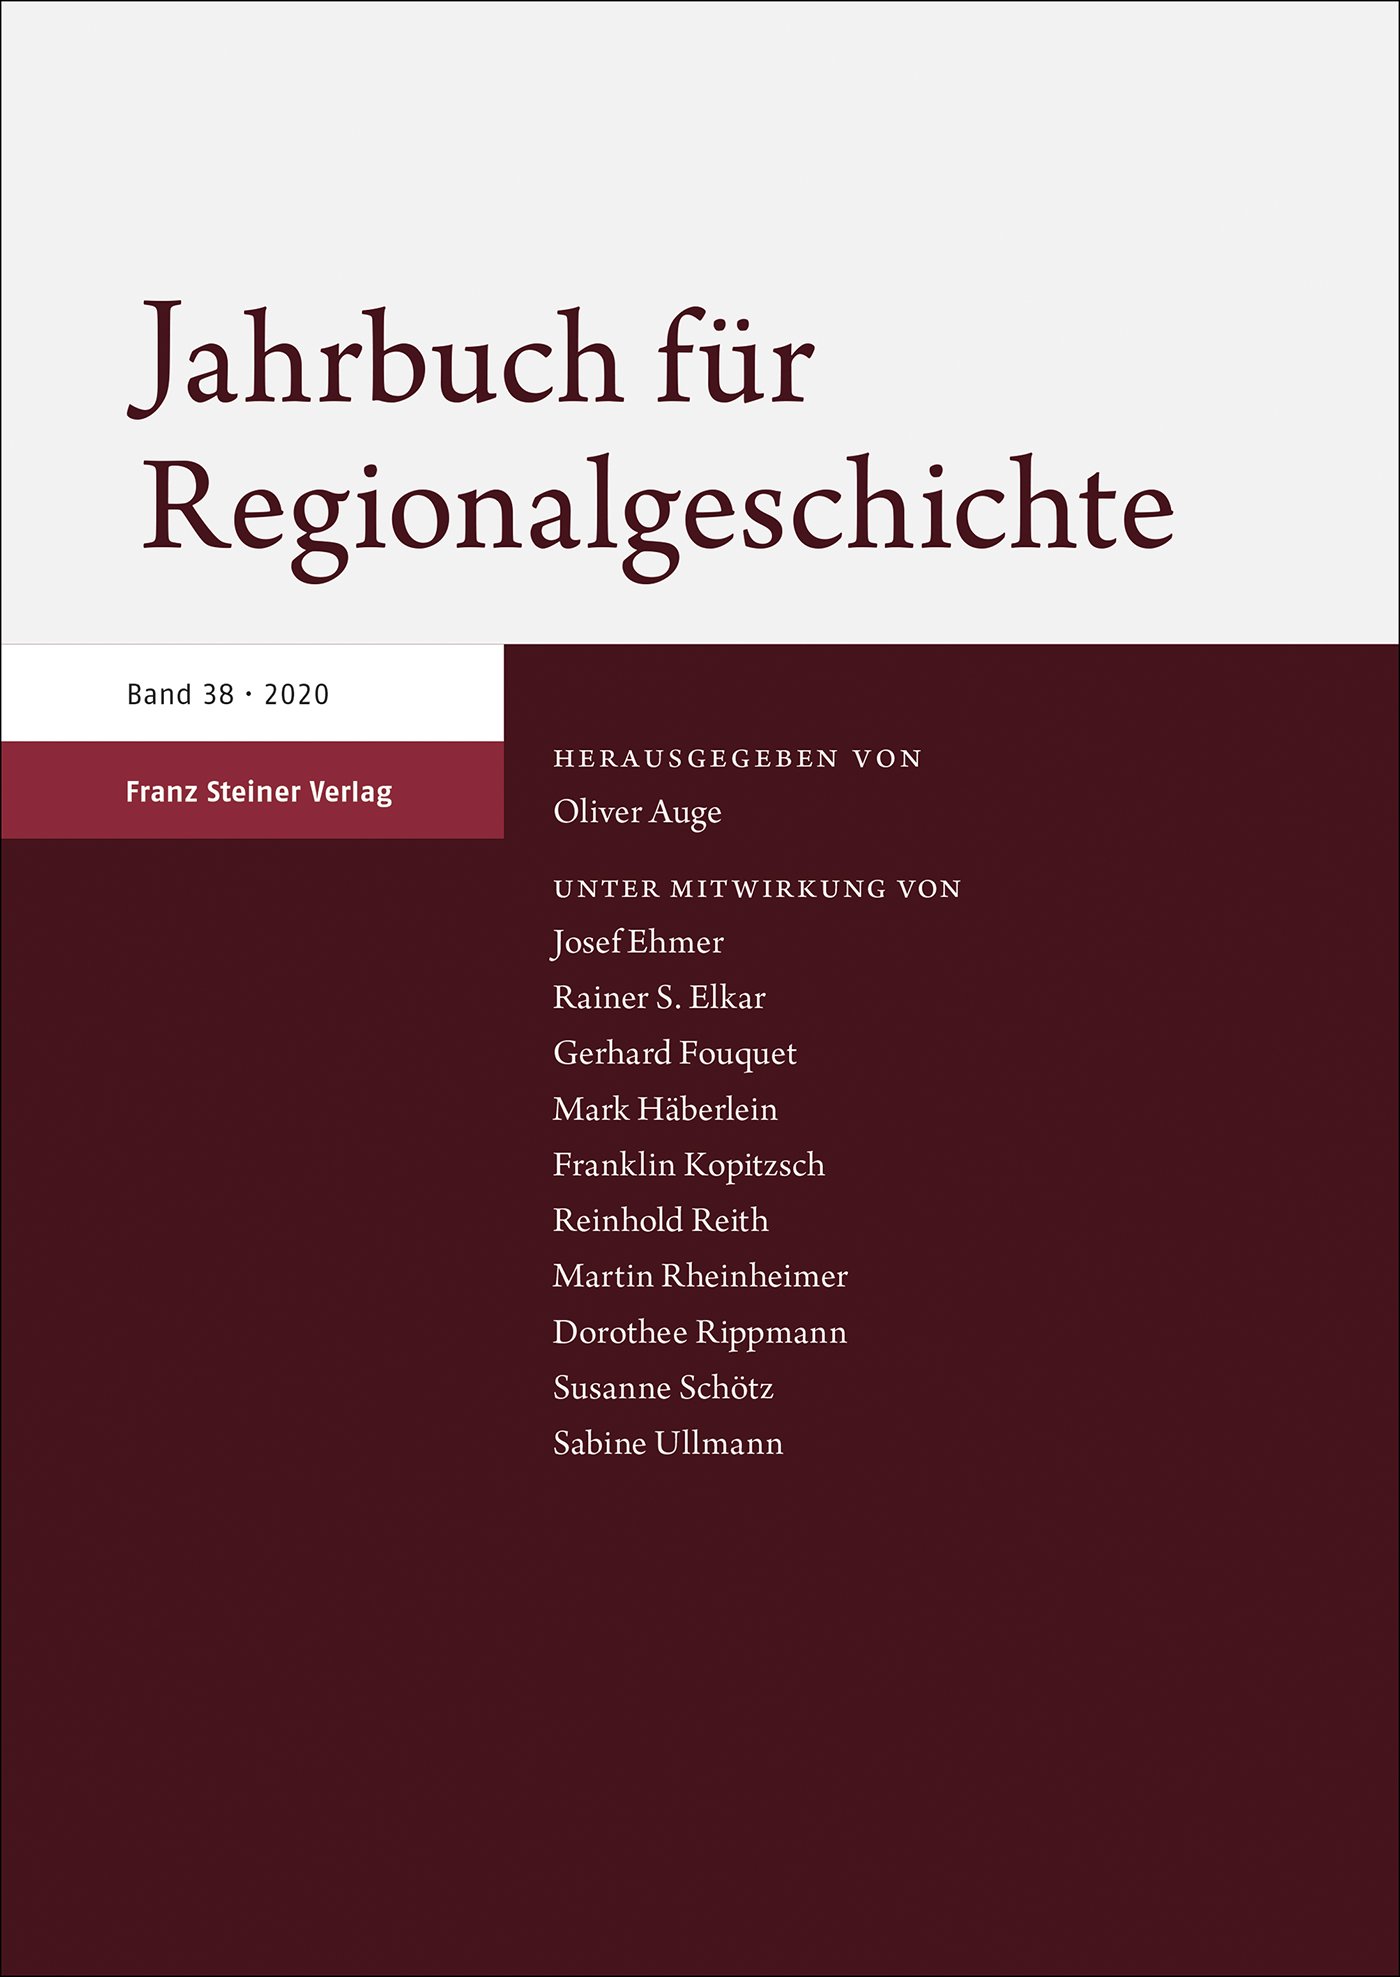 Jahrbuch für Regionalgeschichte 38 (2020)